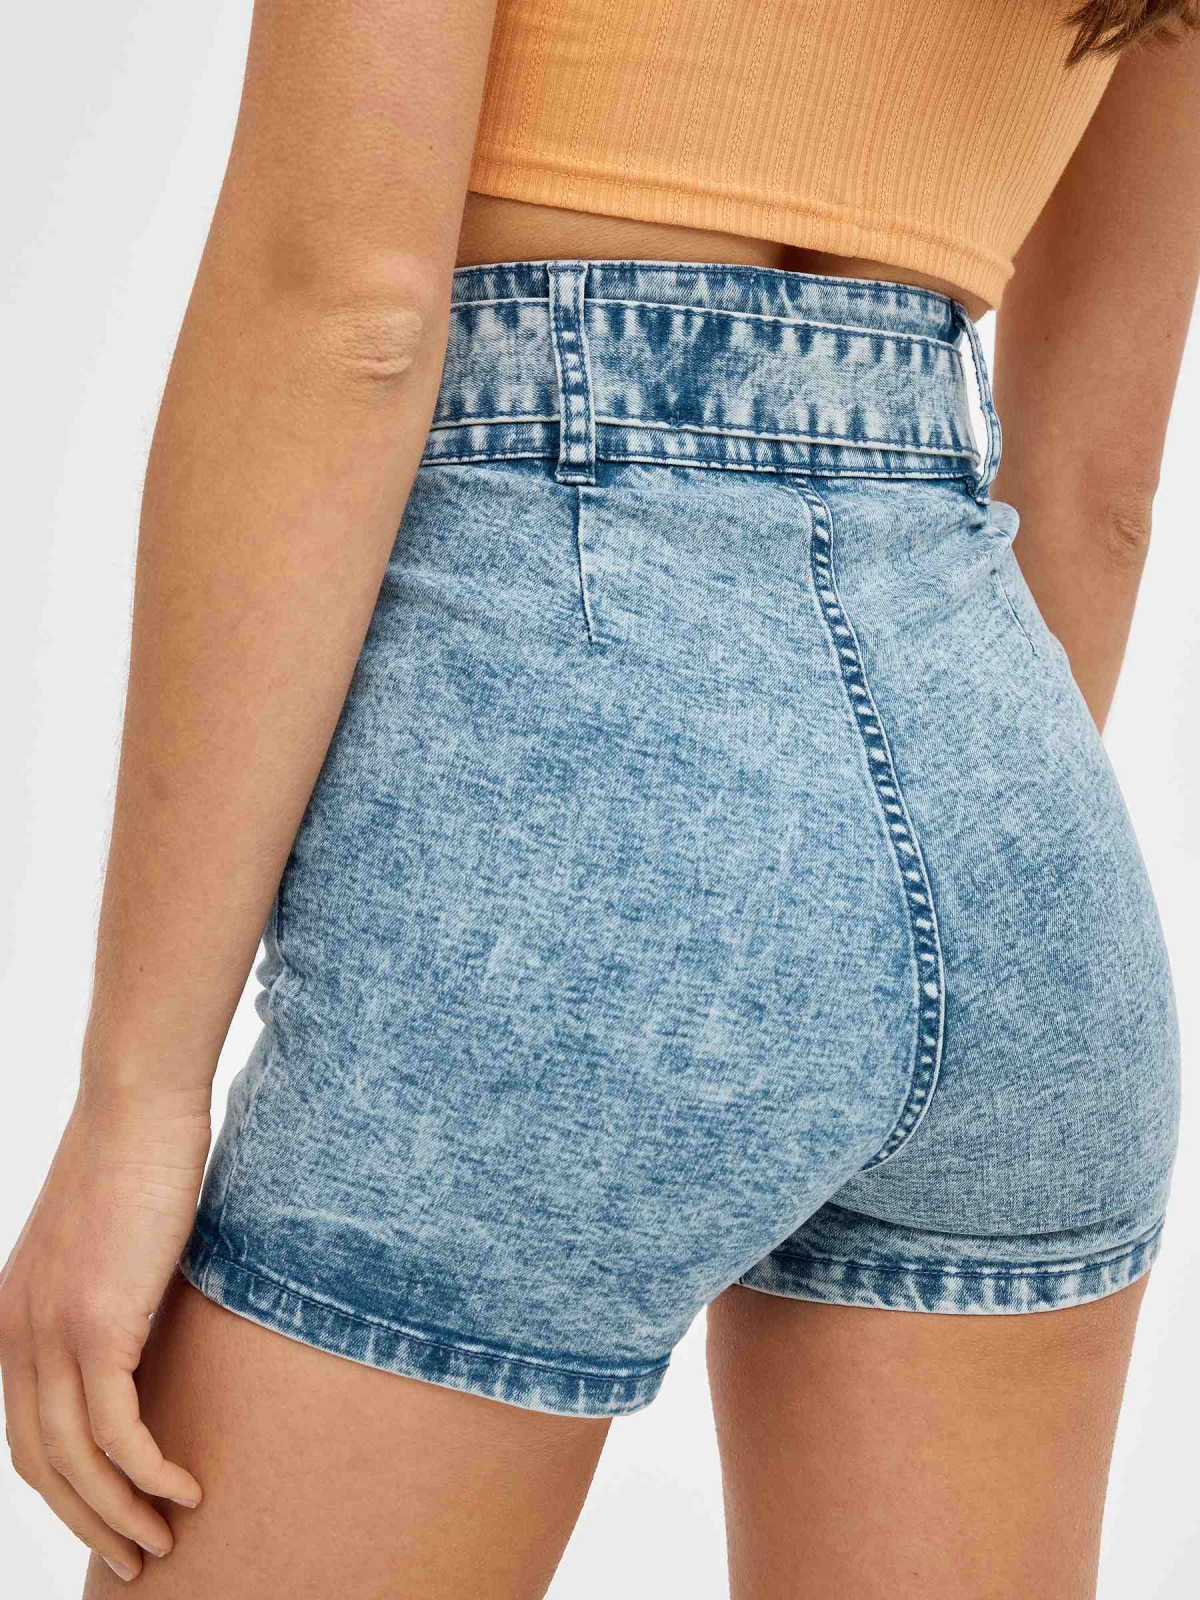 Shorts denim con cinturón azul claro vista detalle